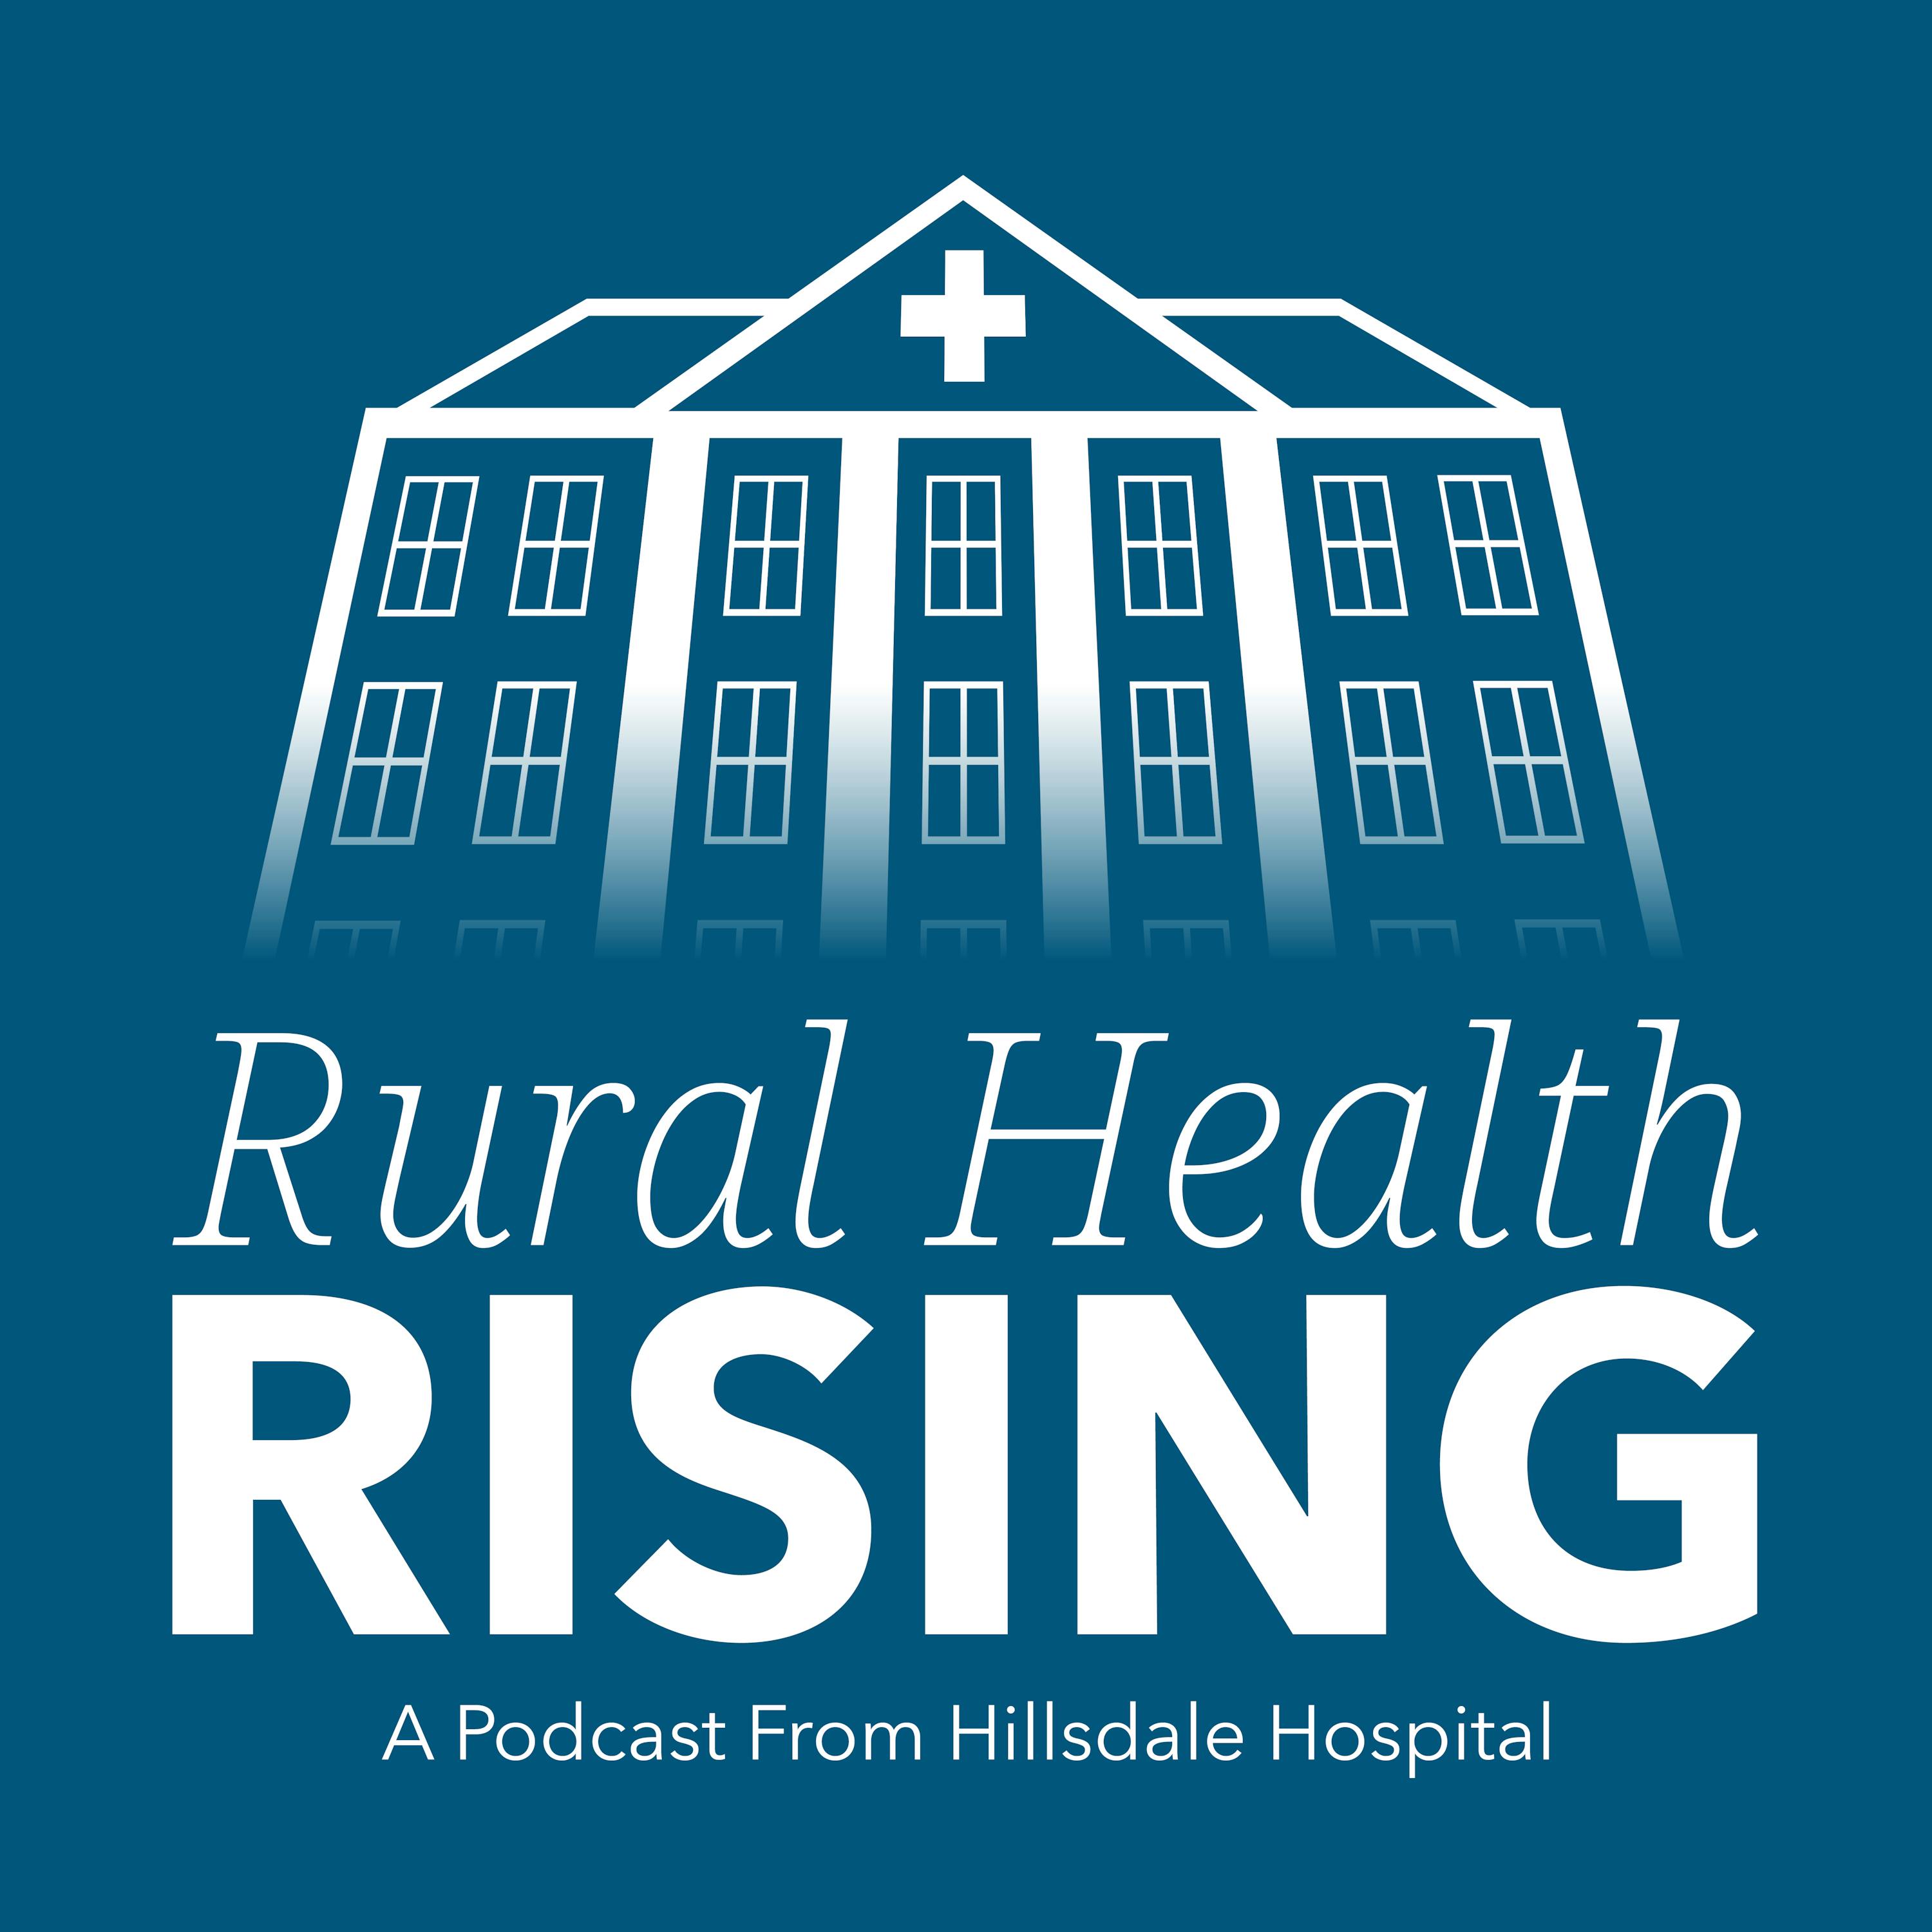 Episode 52: Healthcare Industry News & Trends